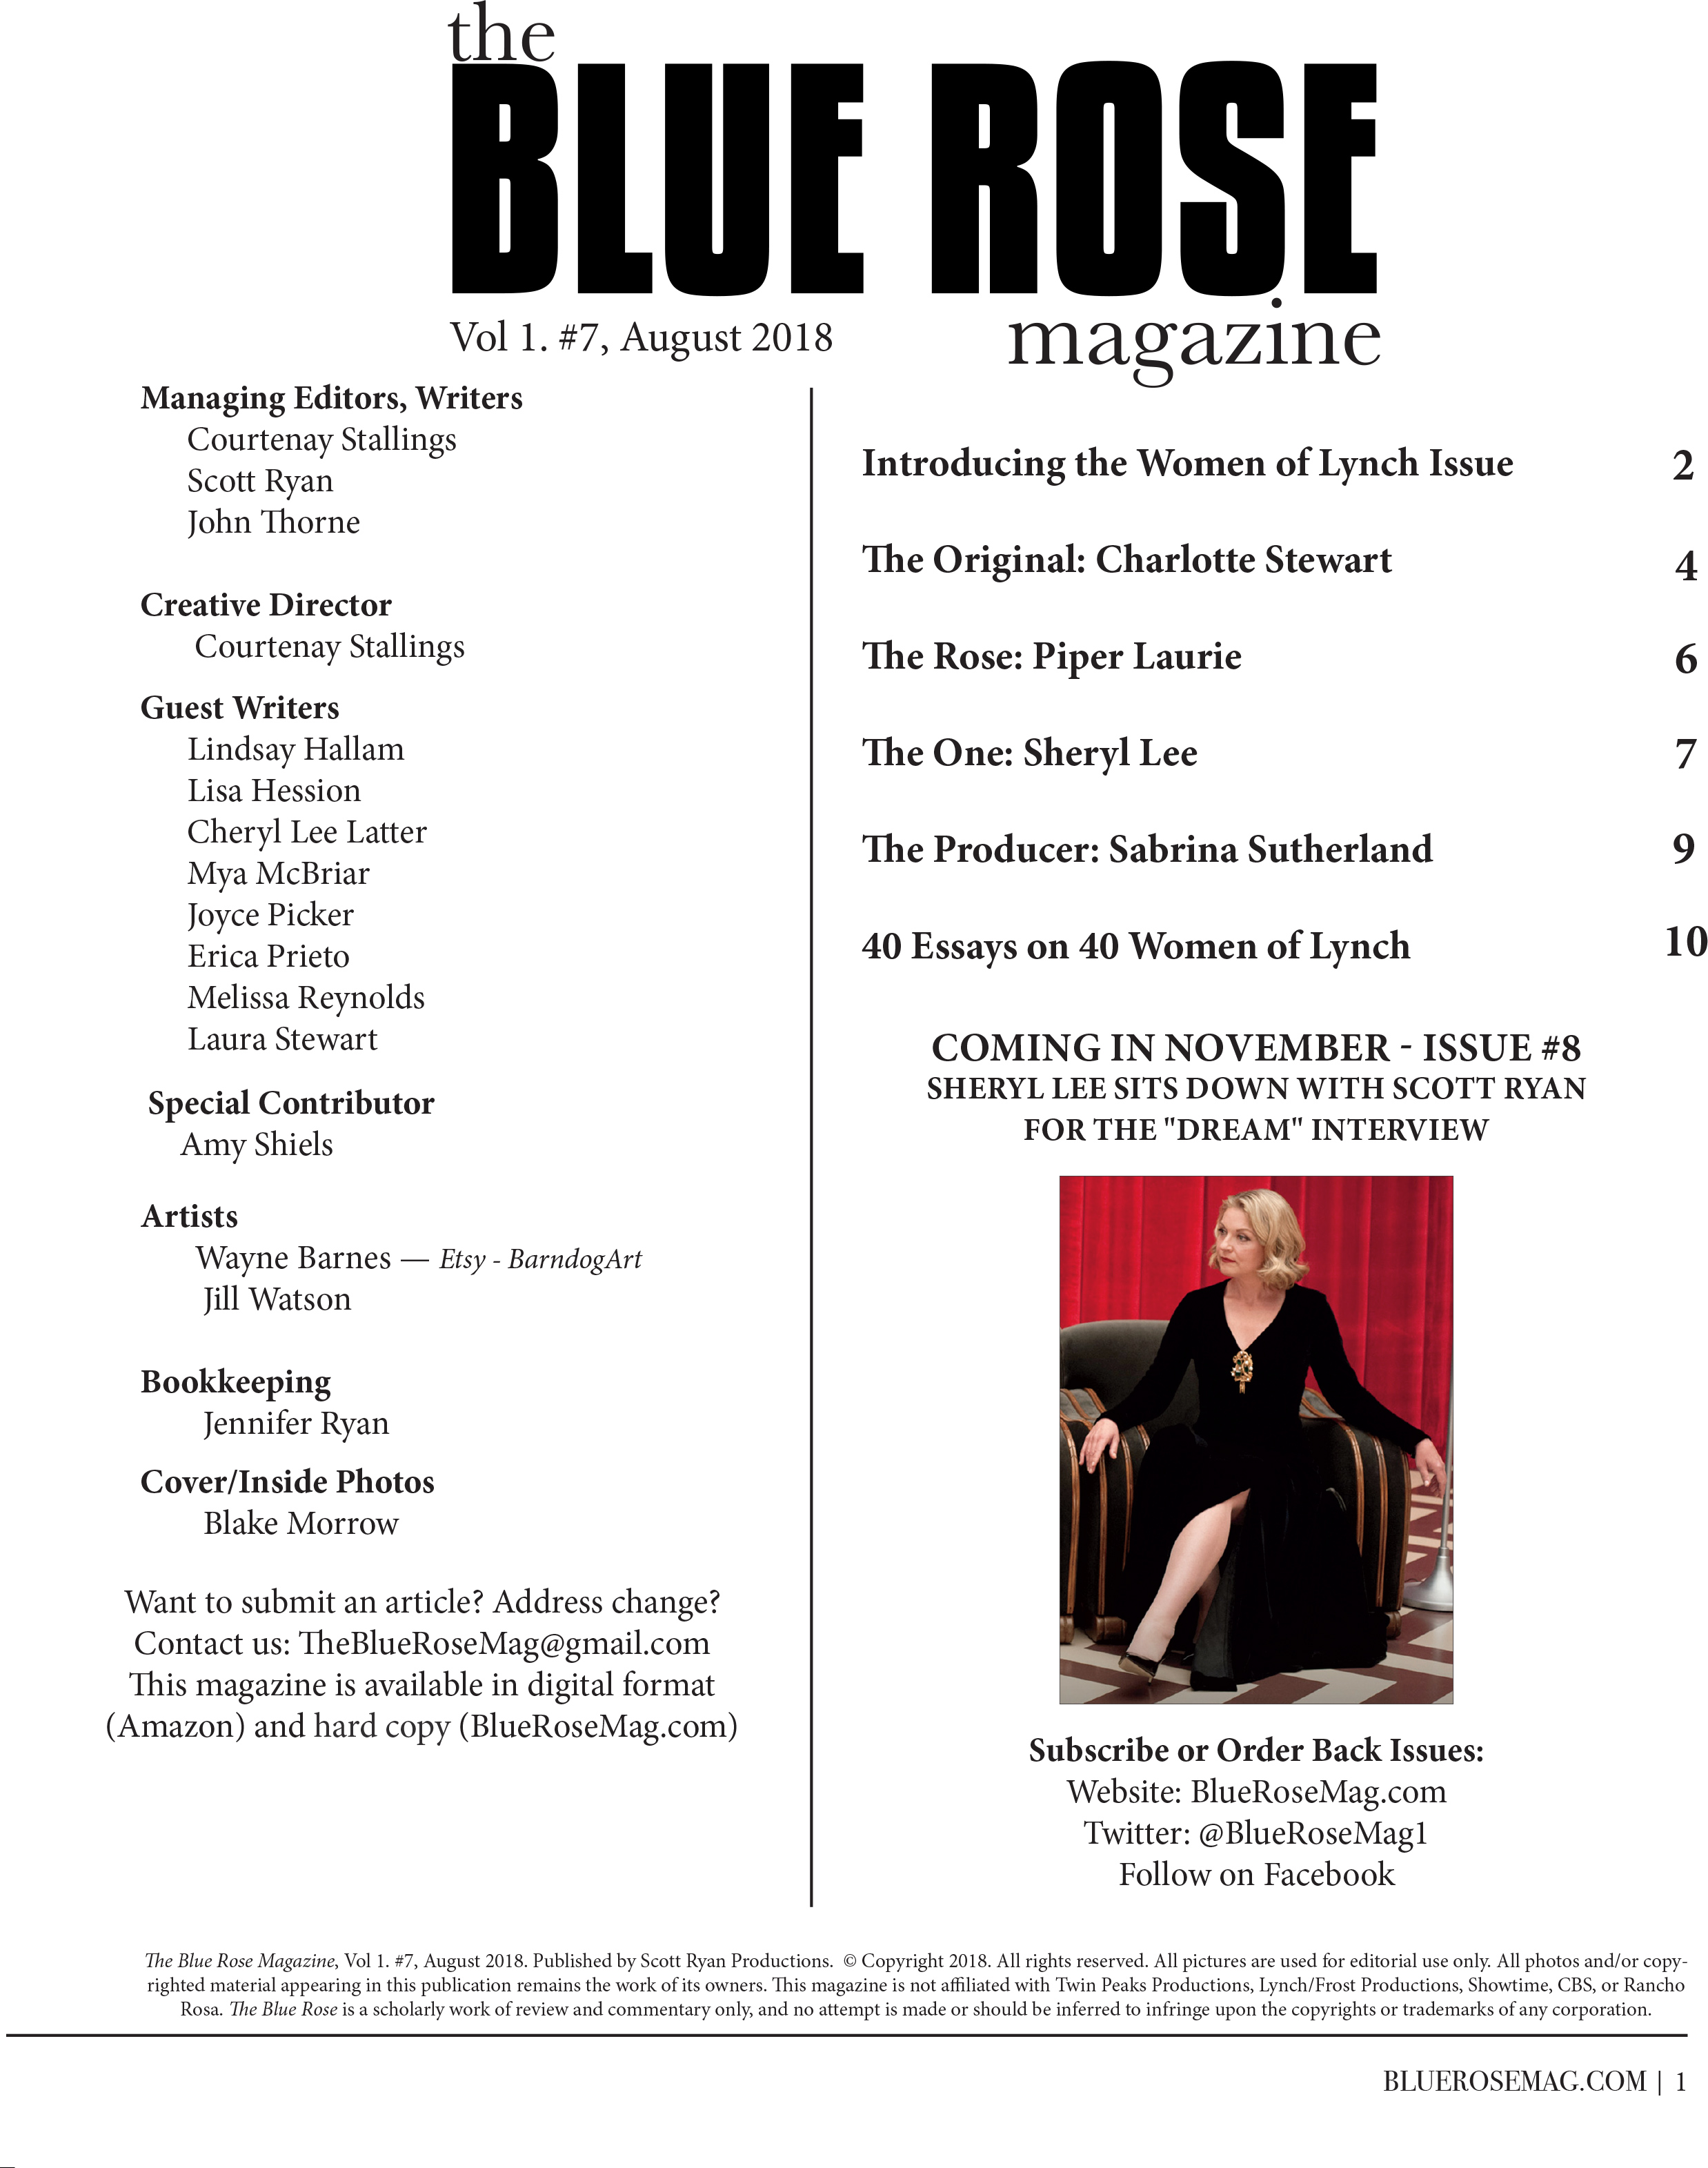 The Blue Rose Magazine Issue #7 – Blue Rose Magazine